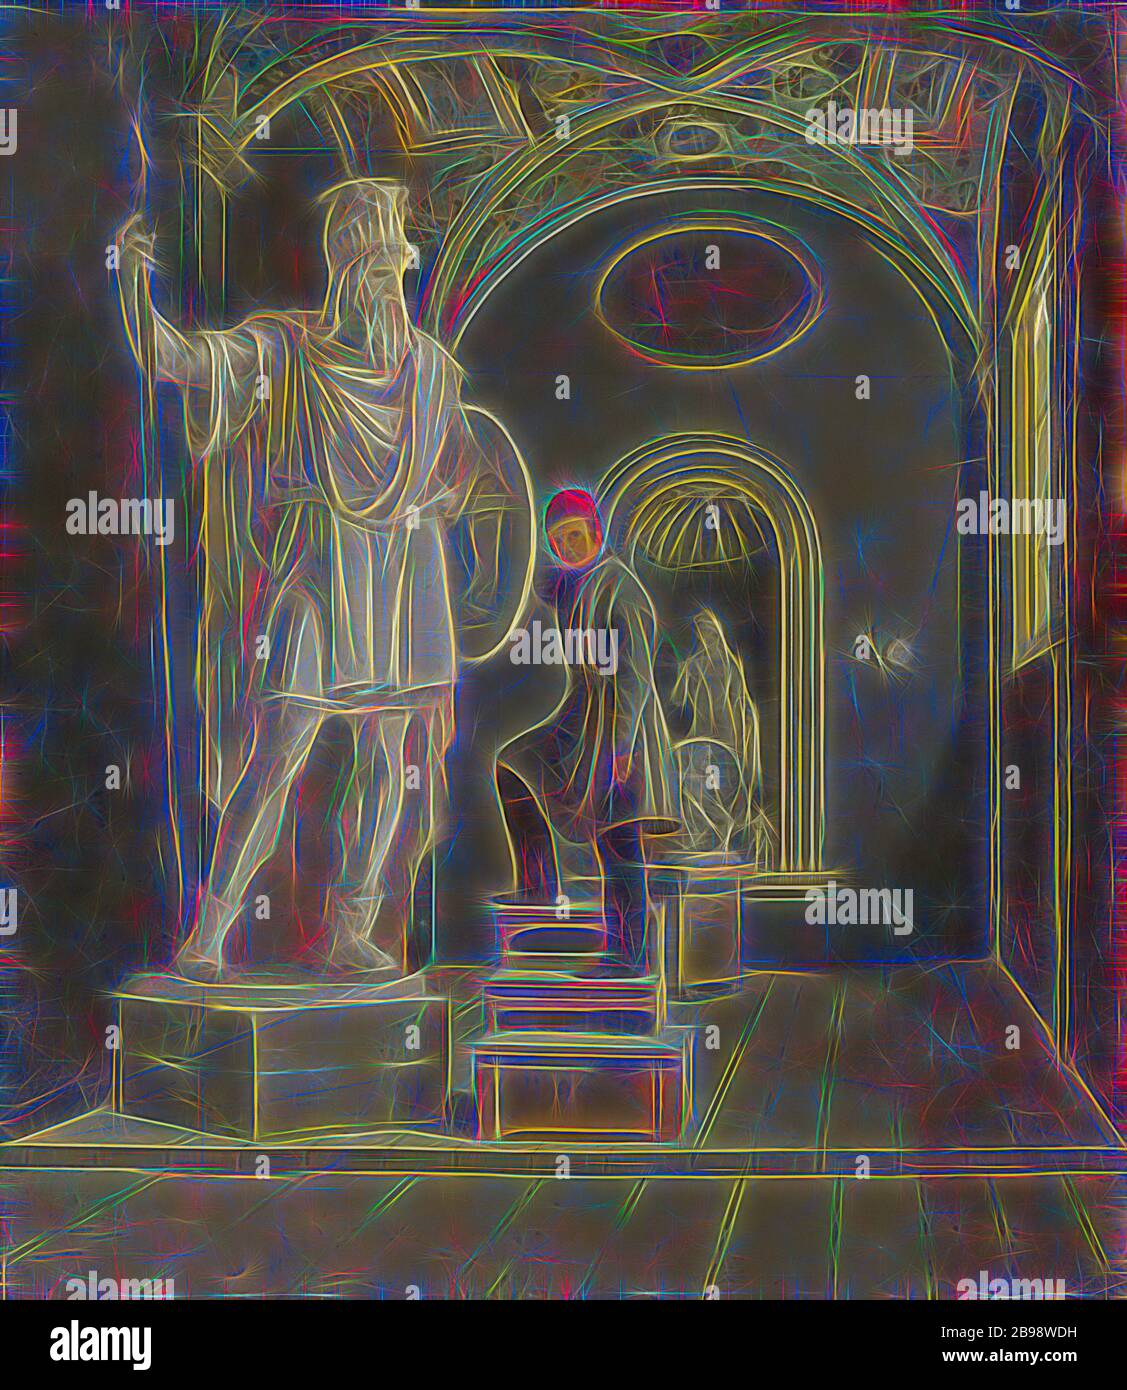 Carl Stefan Bennett, le Sculptor Fogelberg's Studio à Rome, le studio de Fogelberg i ROM, peinture, 1831, huile sur toile, hauteur, 42 cm (16.5 pouces), largeur, 35 cm (13.7 pouces), repensé par Gibon, conception de lumière chaude et gaie rayonnant de la luminosité et de rayons de lumière radiance. L'art classique réinventé avec une touche moderne. Photographie inspirée par le futurisme, embrassant l'énergie dynamique de la technologie moderne, le mouvement, la vitesse et révolutionnez la culture. Banque D'Images